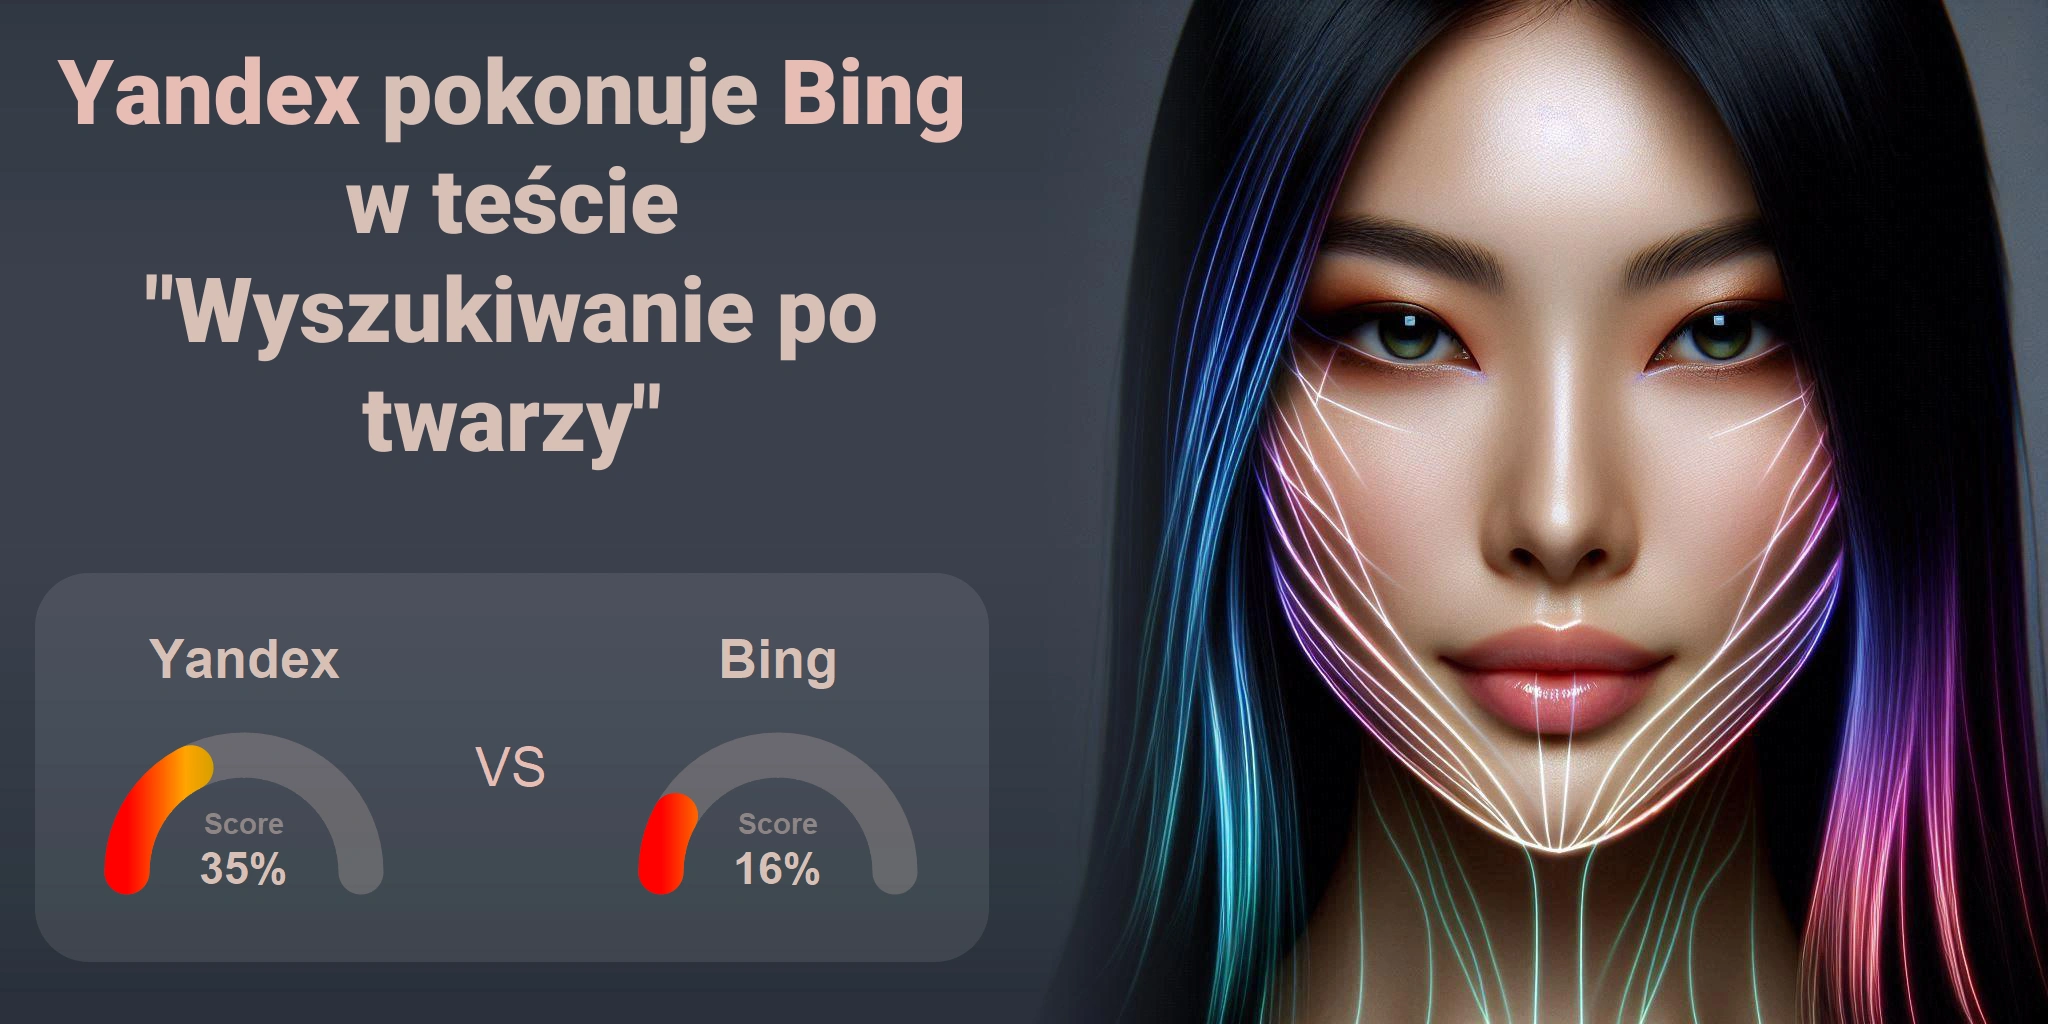 Który jest lepszy do wyszukiwania twarzy: <br>Bing czy Yandex?